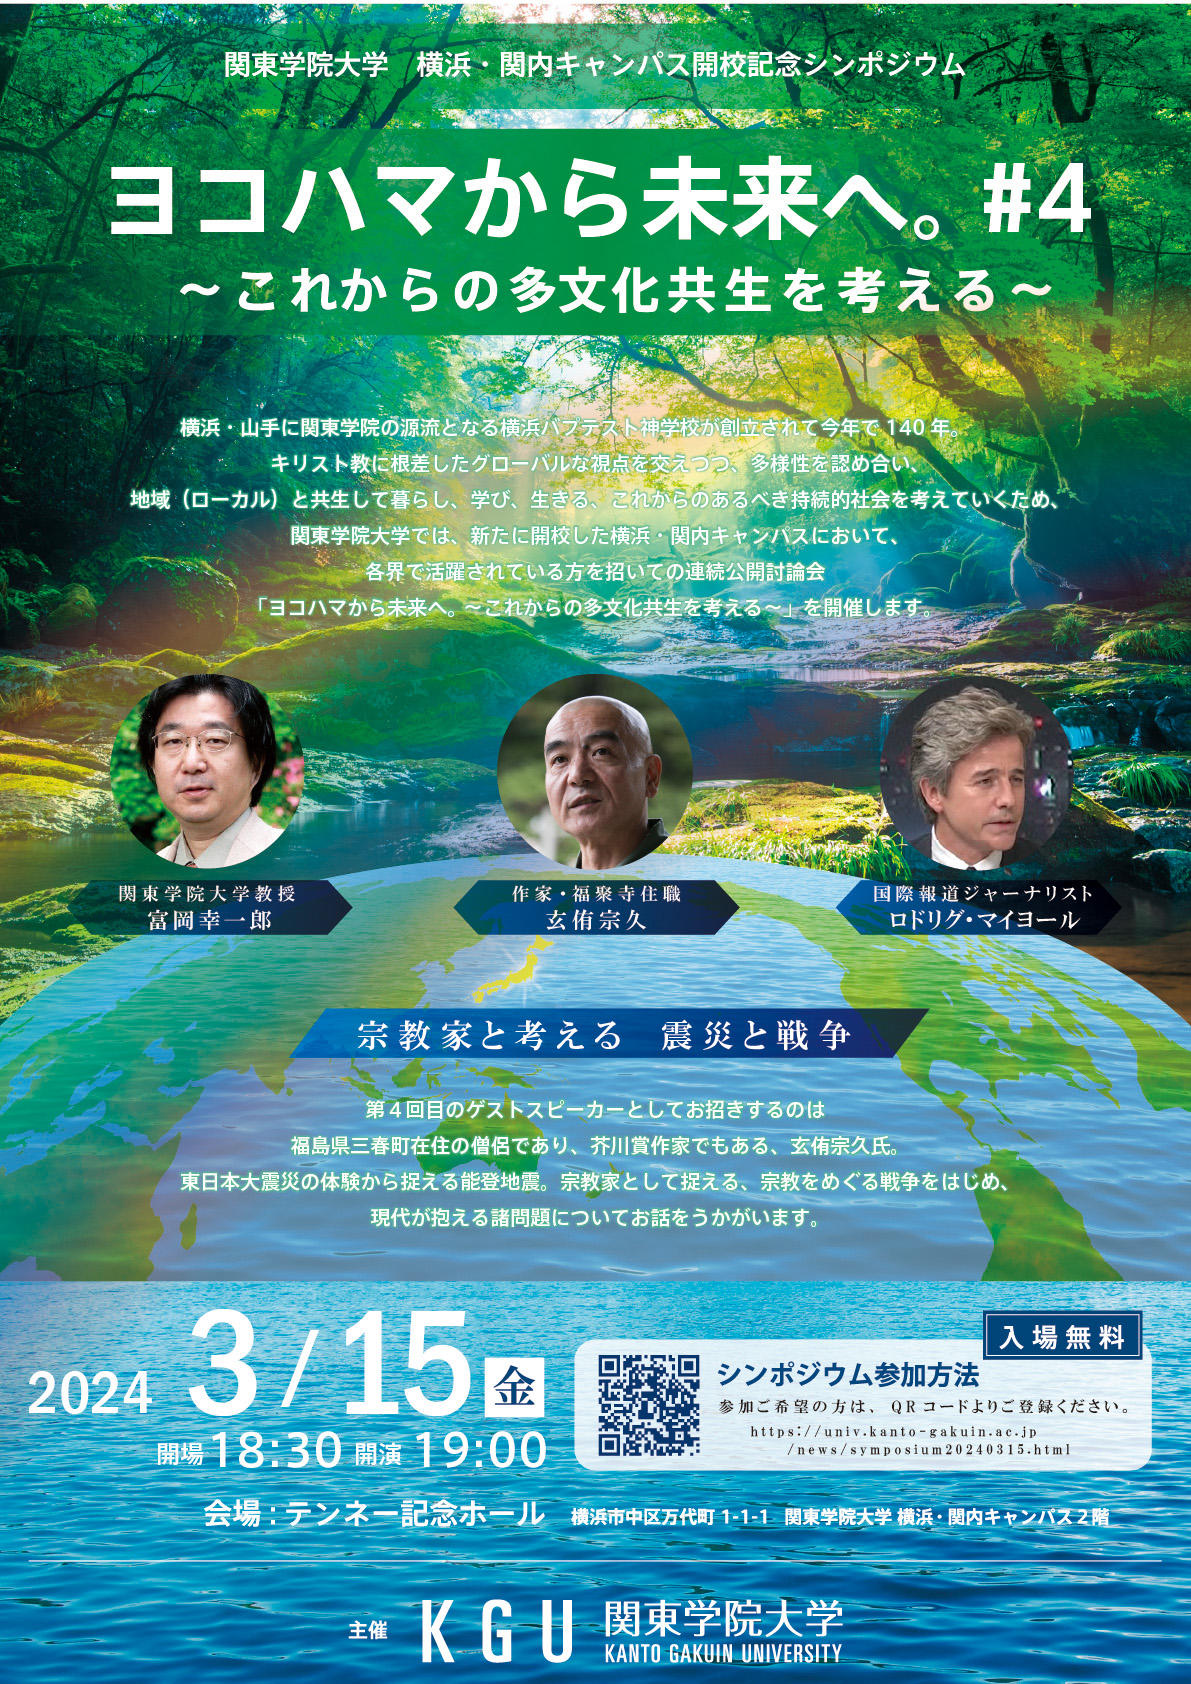 関東学院大学 横浜・関内キャンパス開校記念シンポジウム「ヨコハマから未来へ。#4 ～これからの多文化共生を考える～」開催のお知らせ